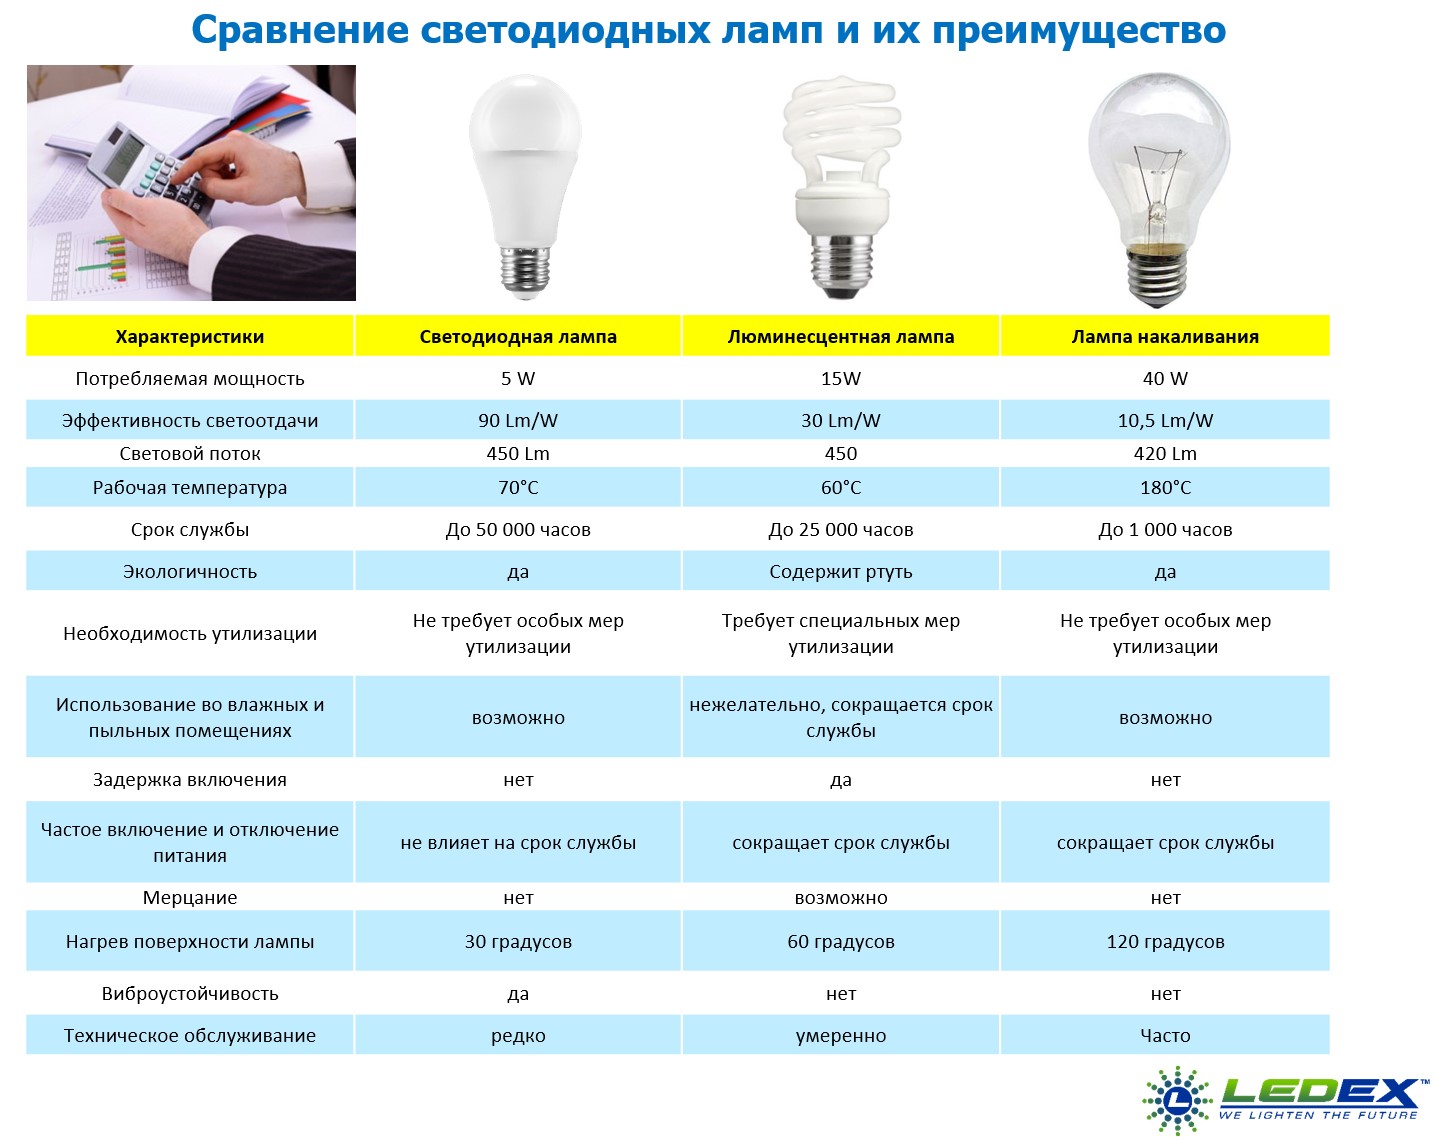 светодиодные лампы виды и характеристики